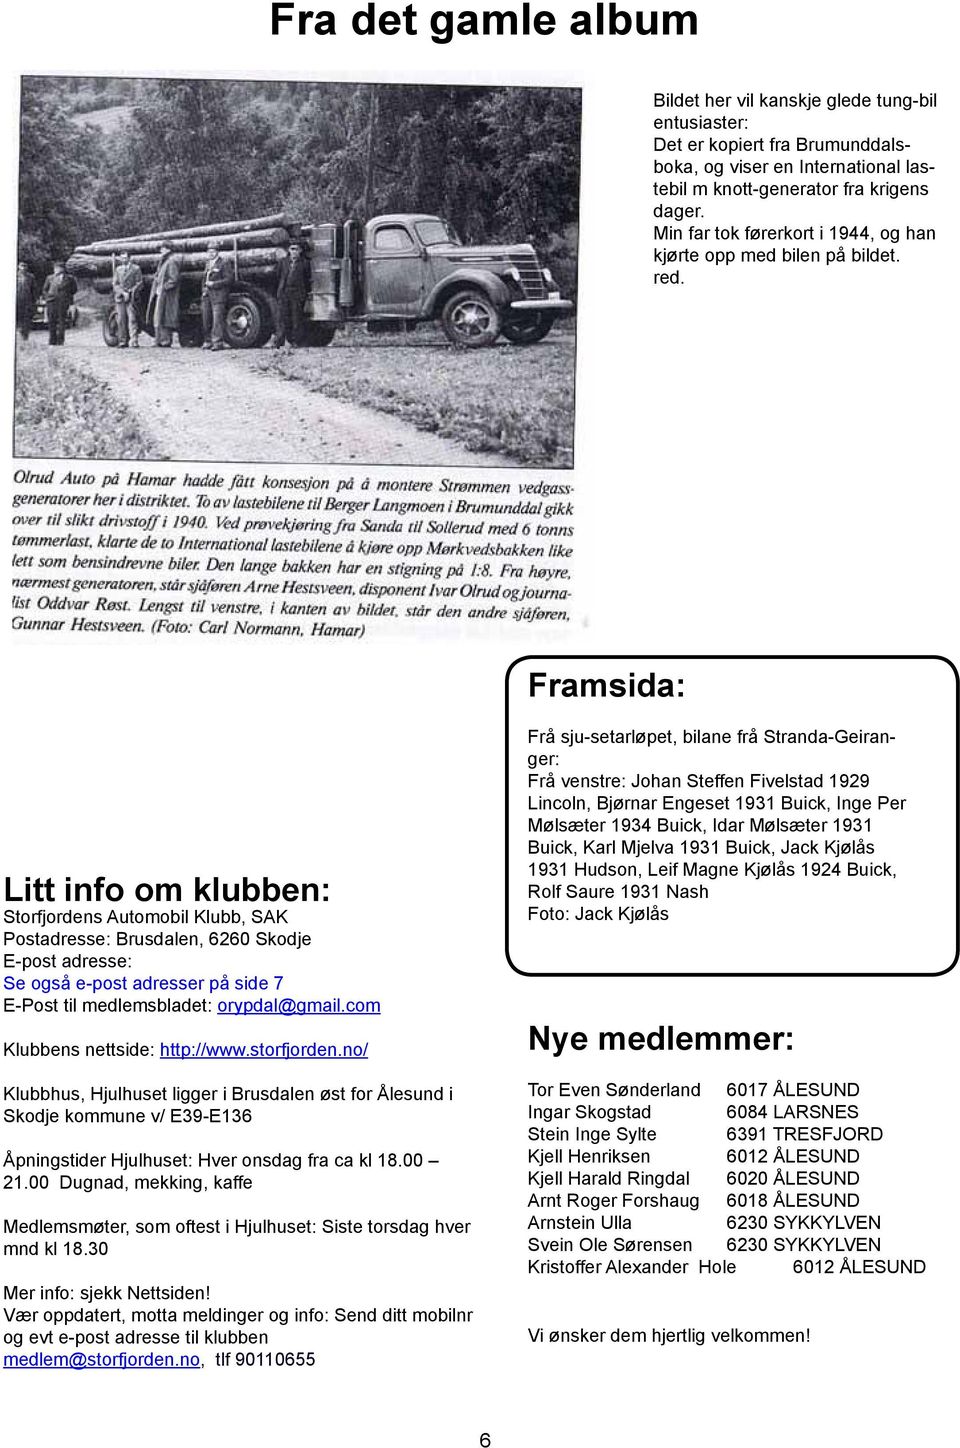 Framsida: Litt info om klubben: Storfjordens Automobil Klubb, SAK Postadresse: Brusdalen, 6260 Skodje E-post adresse: Se også e-post adresser på side 7 E-Post til medlemsbladet: orypdal@gmail.